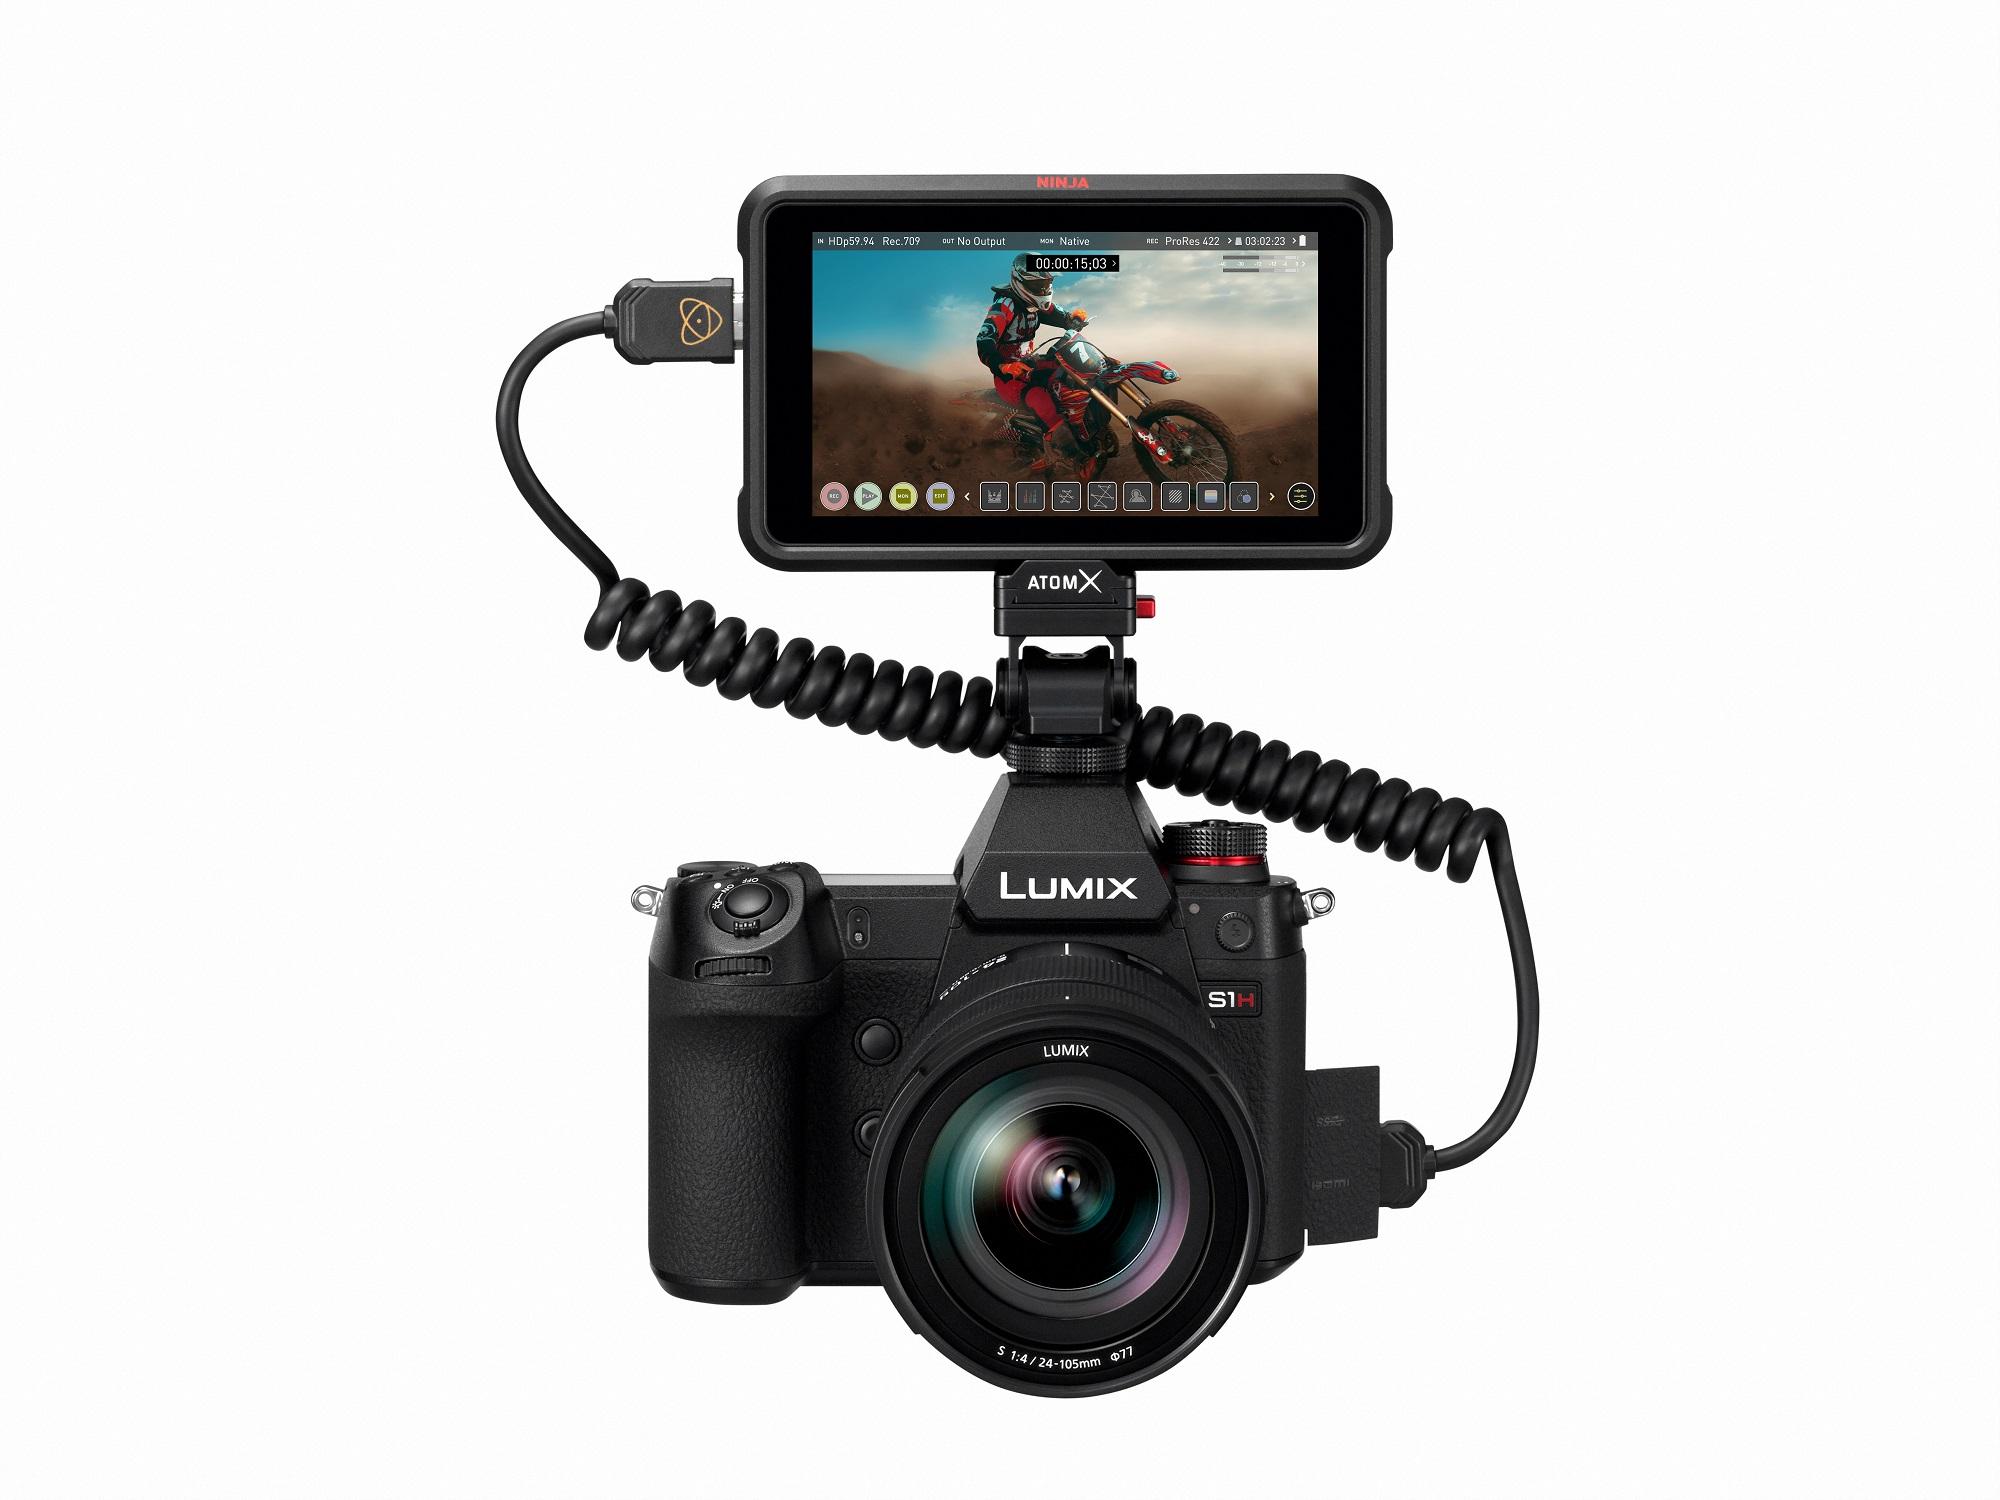 カメラ デジタルカメラ フルサイズミラーレス一眼カメラ LUMIX S1HからATOMOS社製HDMI 